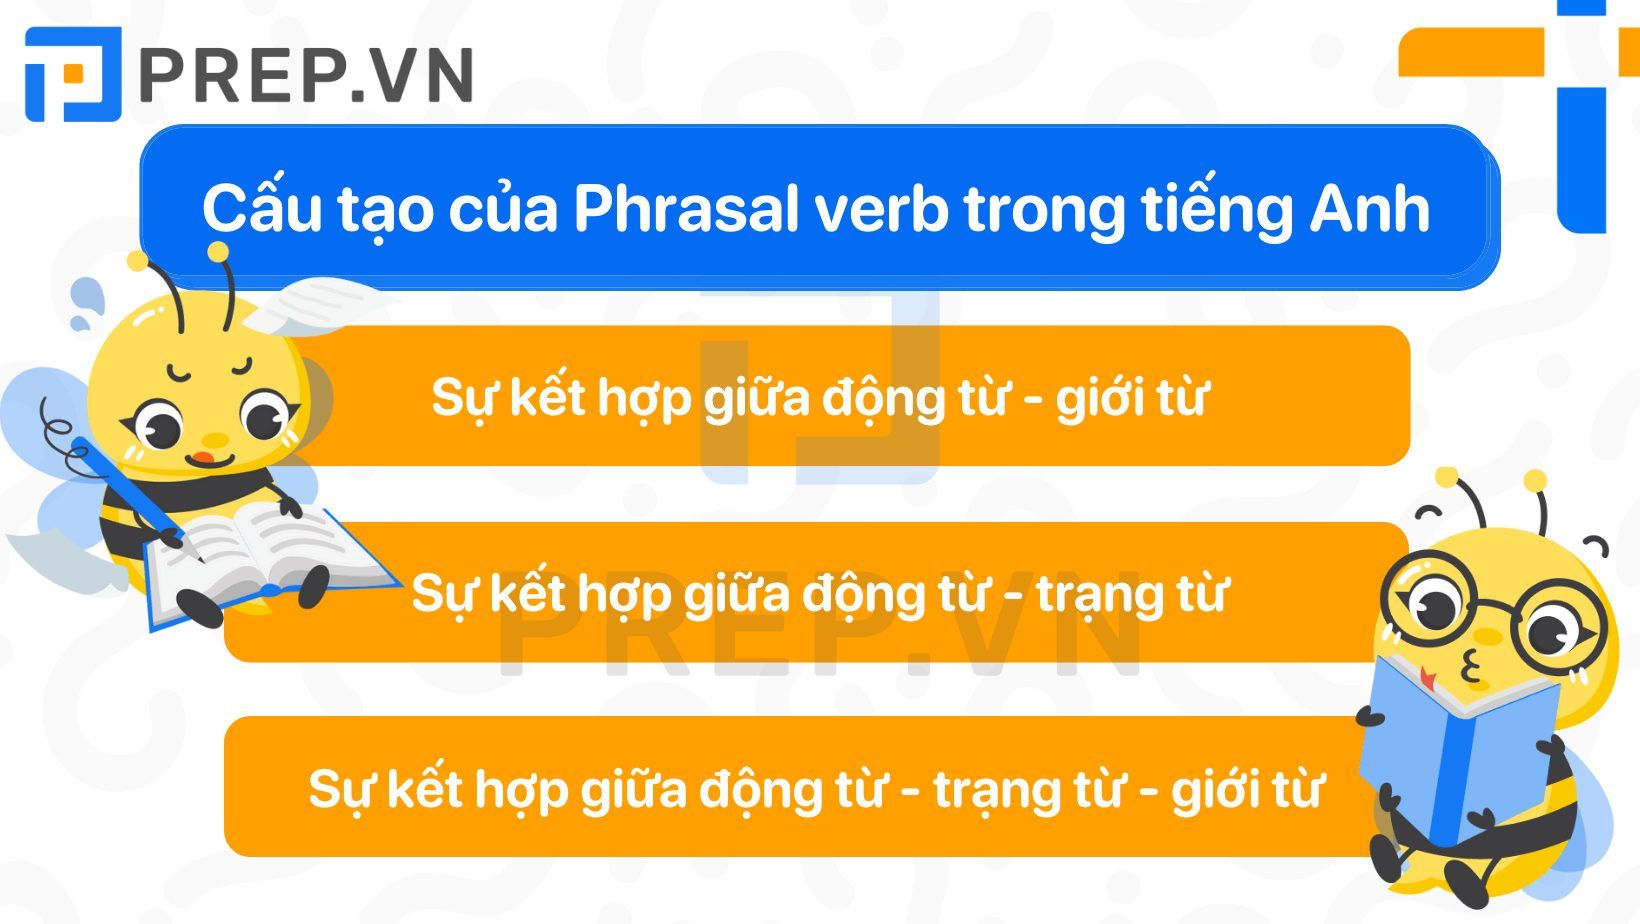 Cấu tạo của Phrasal verb trong tiếng Anh